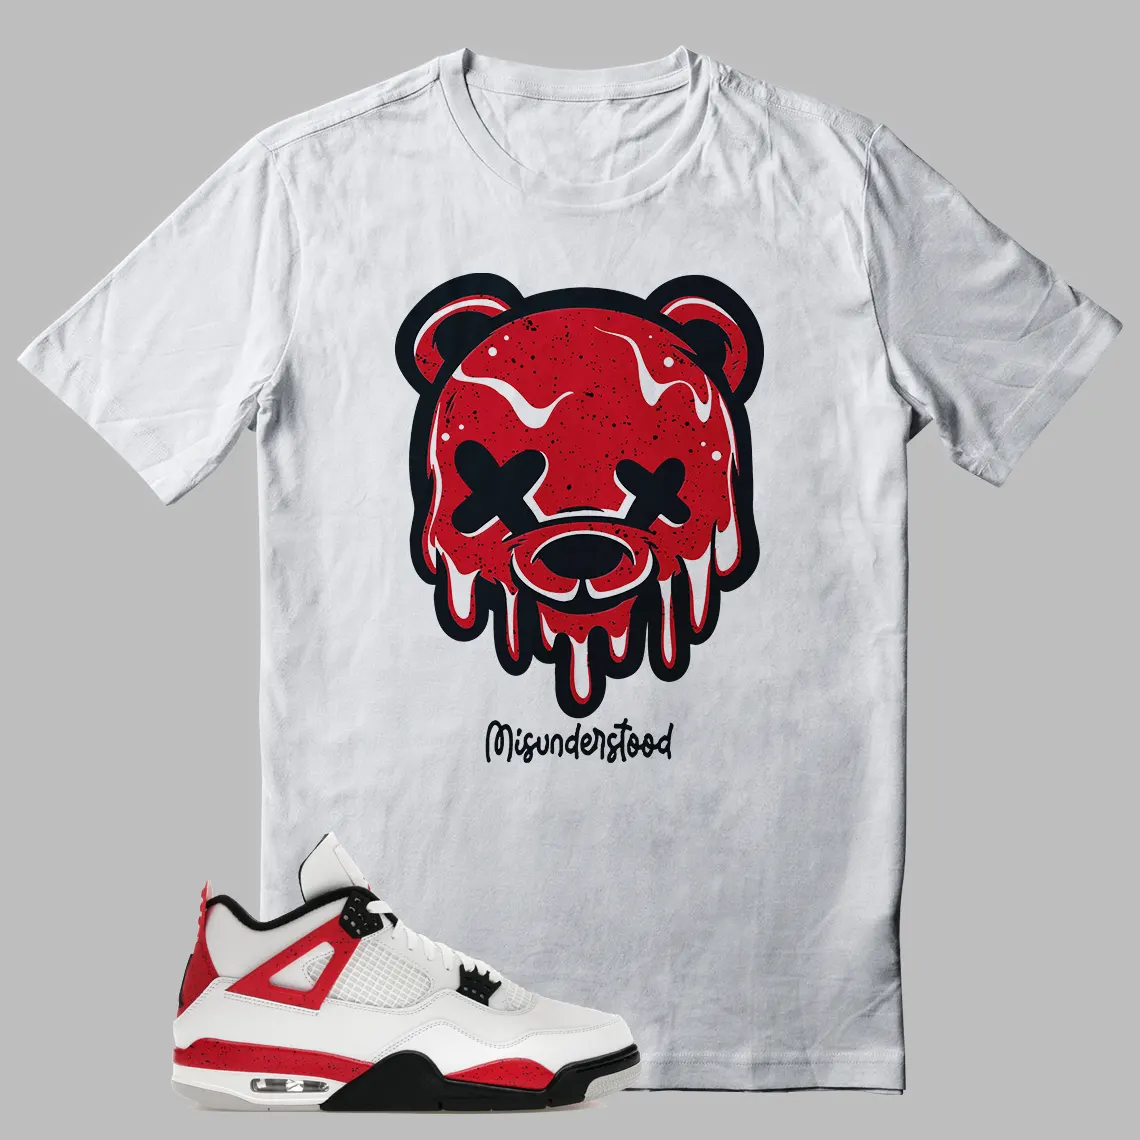 Dripping Bear Shirt To Match Jordan 4 Red Cement